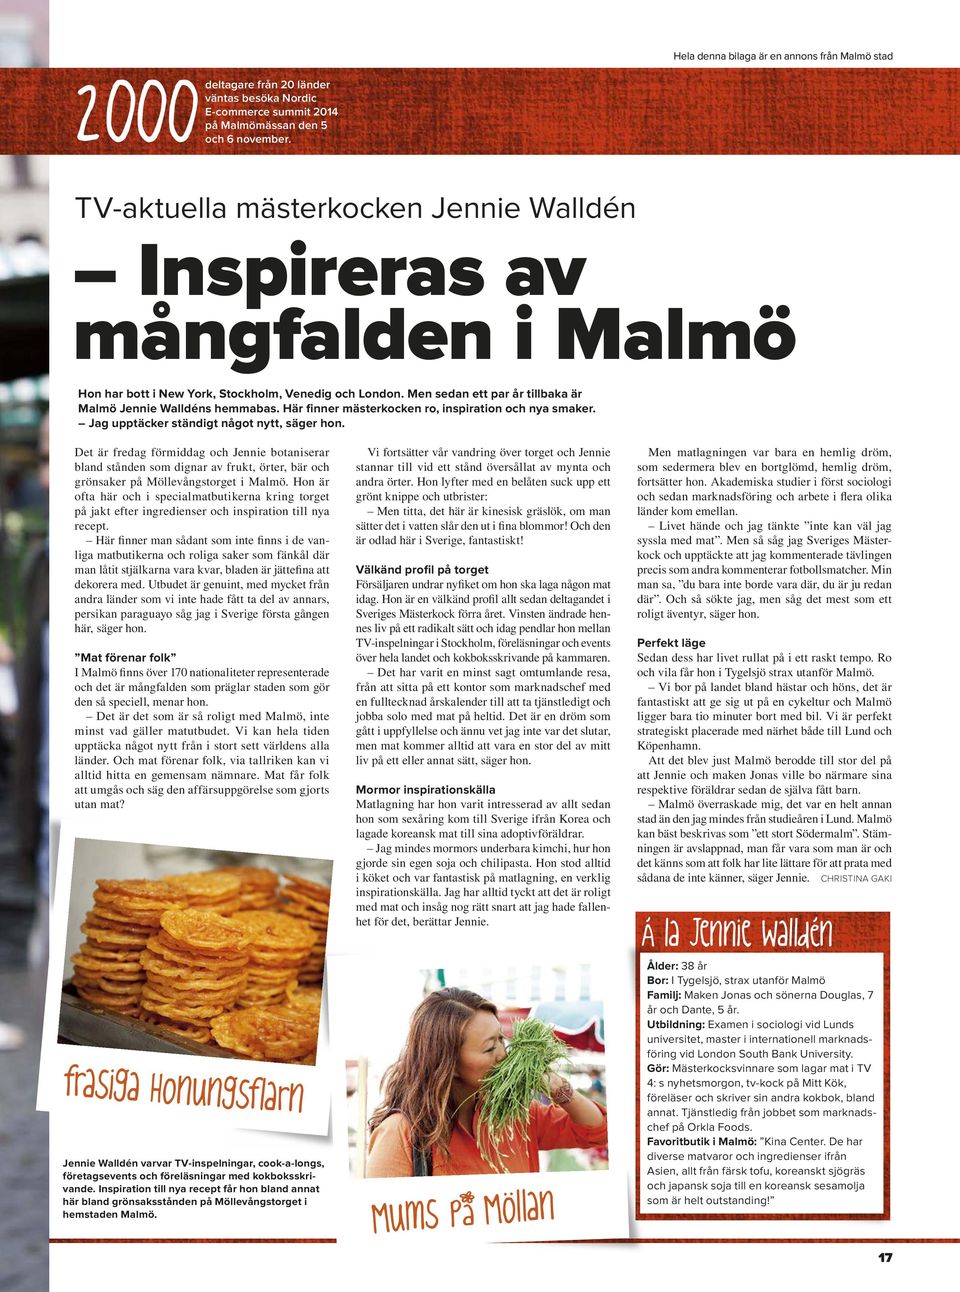 Men sedan ett par år tillbaka är Malmö Jennie Walldéns hemmabas. Här finner mästerkocken ro, inspiration och nya smaker. Jag upptäcker ständigt något nytt, säger hon.